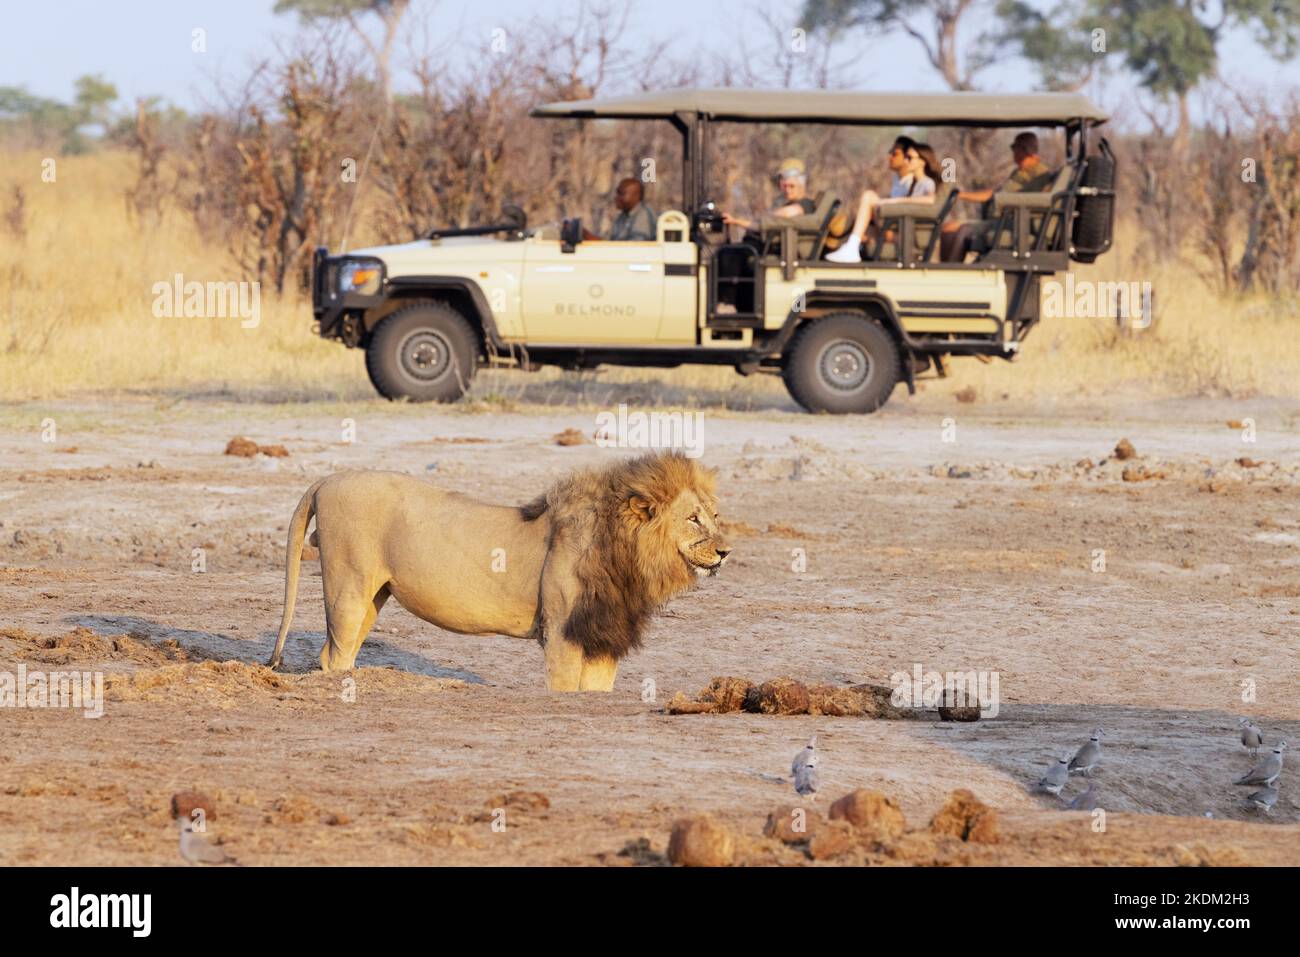 Afrika Reisen; Touristen auf einer Jeep-Safari beobachten einen Löwen an einem Wasserloch, Savuti, Chobe National Park, Botswana Afrika. Afrikanische Safari. Stockfoto